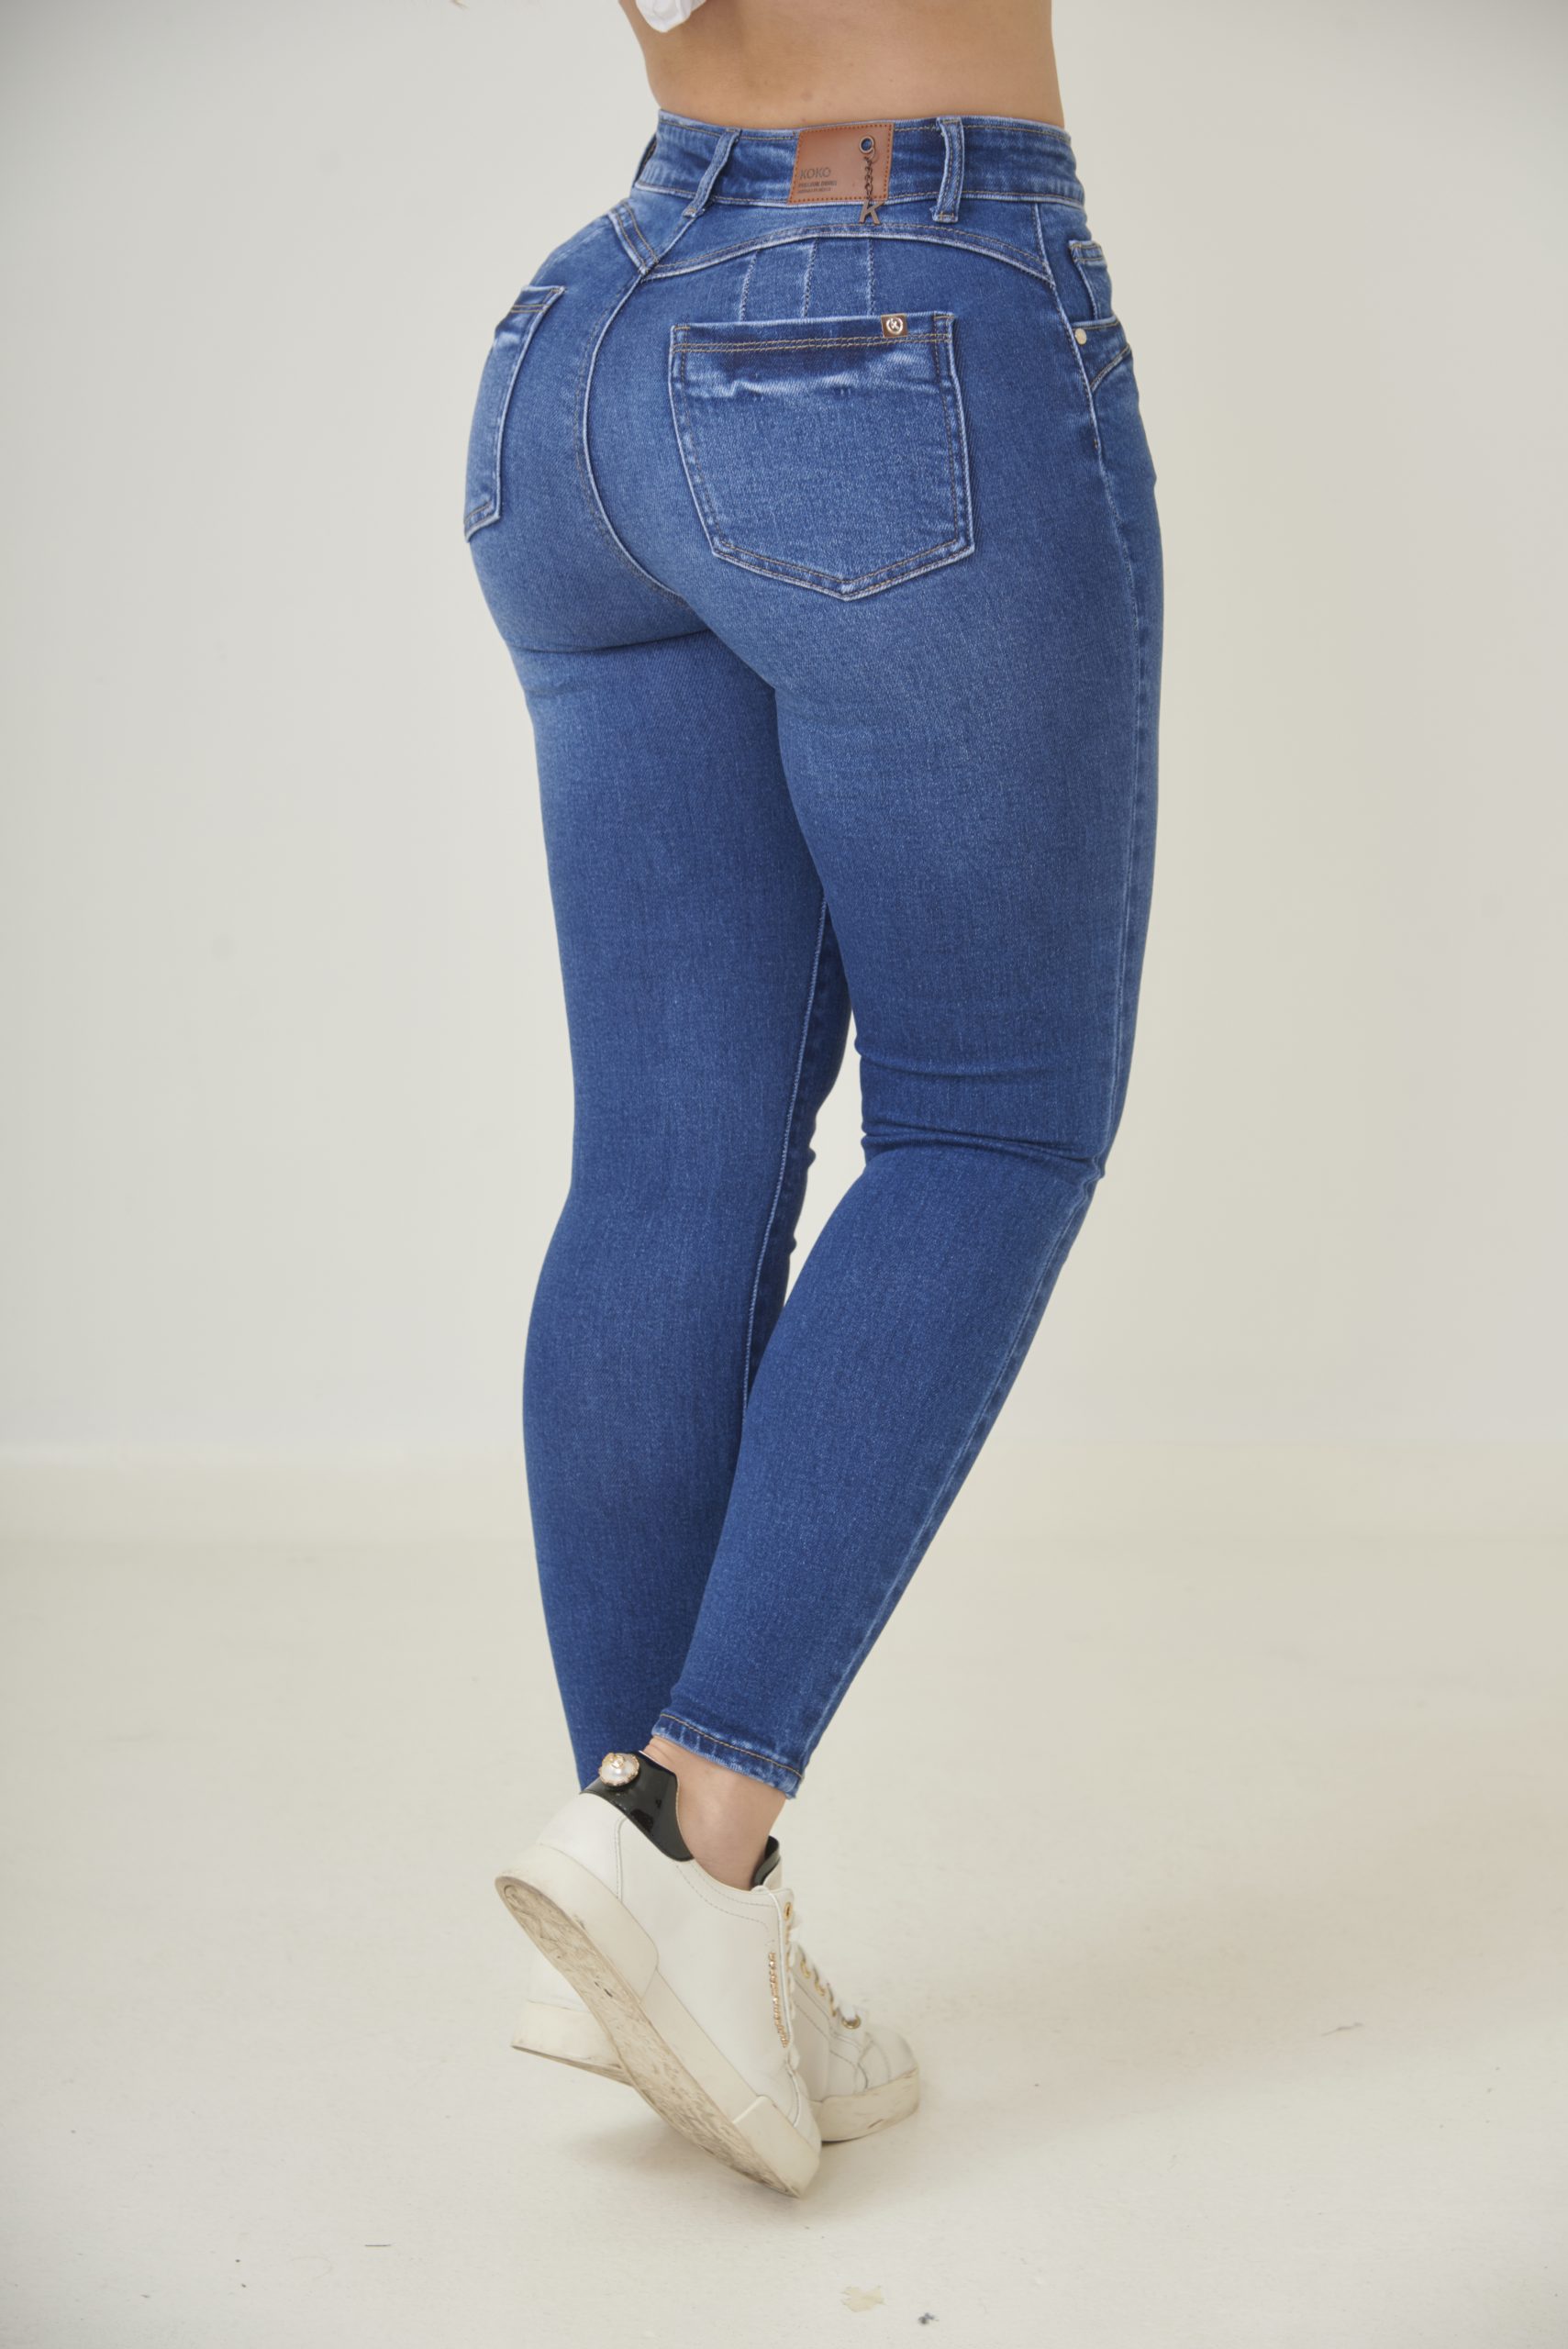 Koko jeans - Innovación